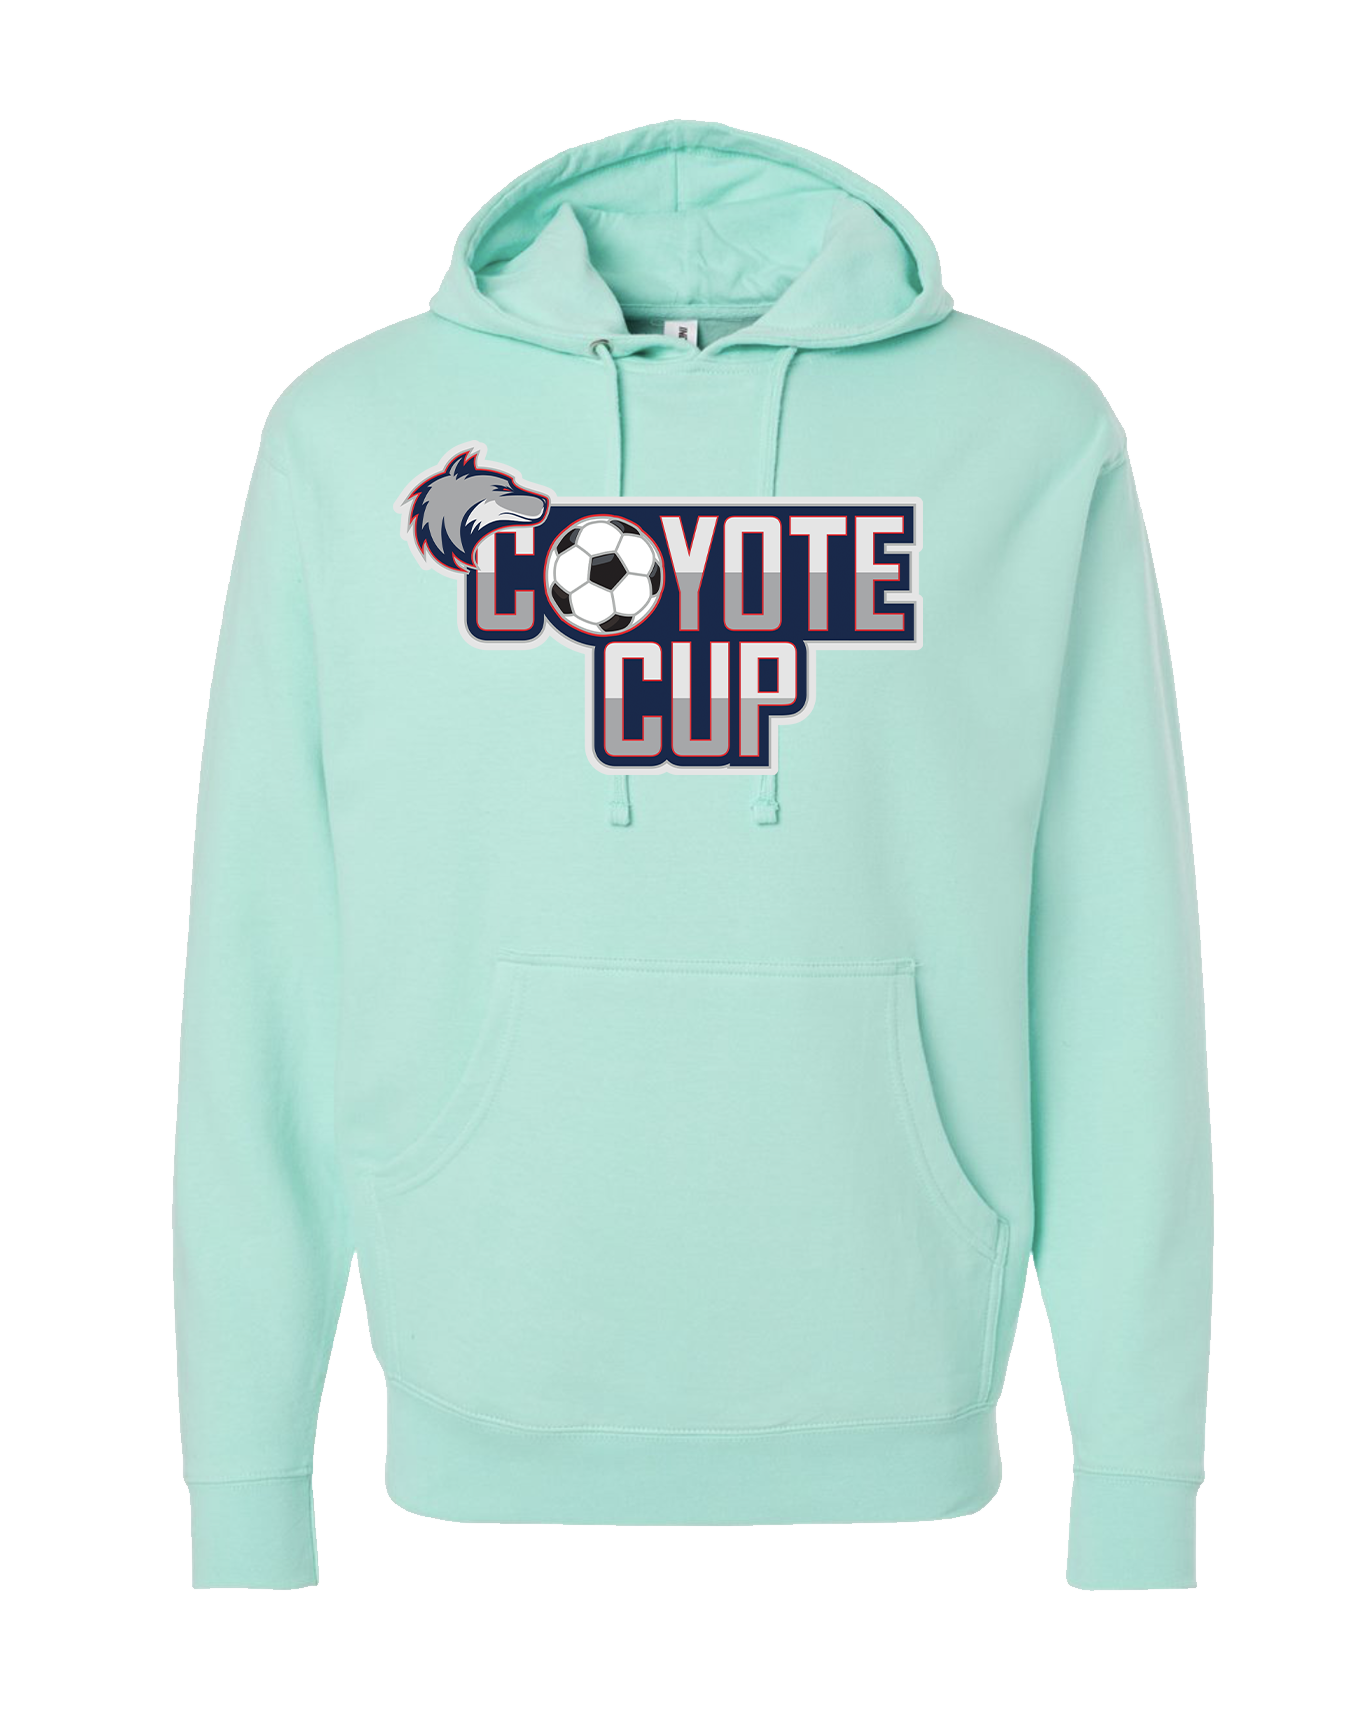 Coyote Cup Mint Hoodie